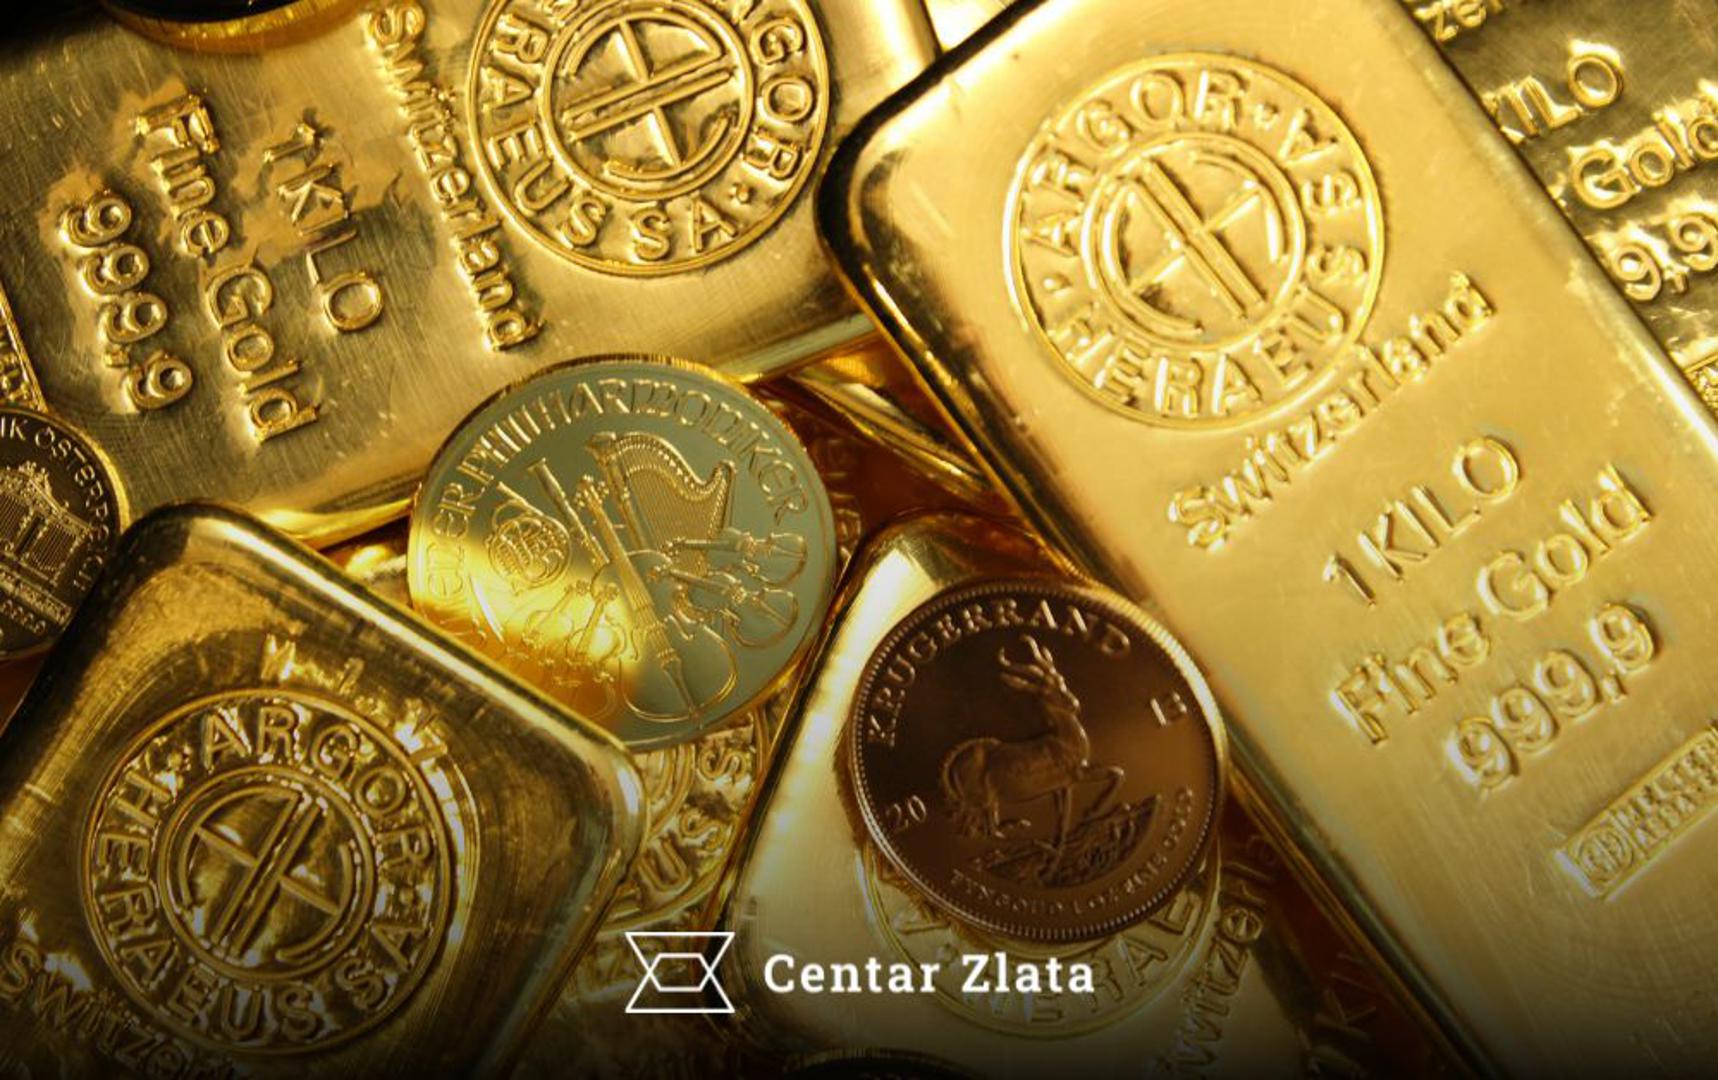 Investicijsko zlato dolazi u obliku standardiziranih zlatnih poluga i zlatnika visoke čistoće